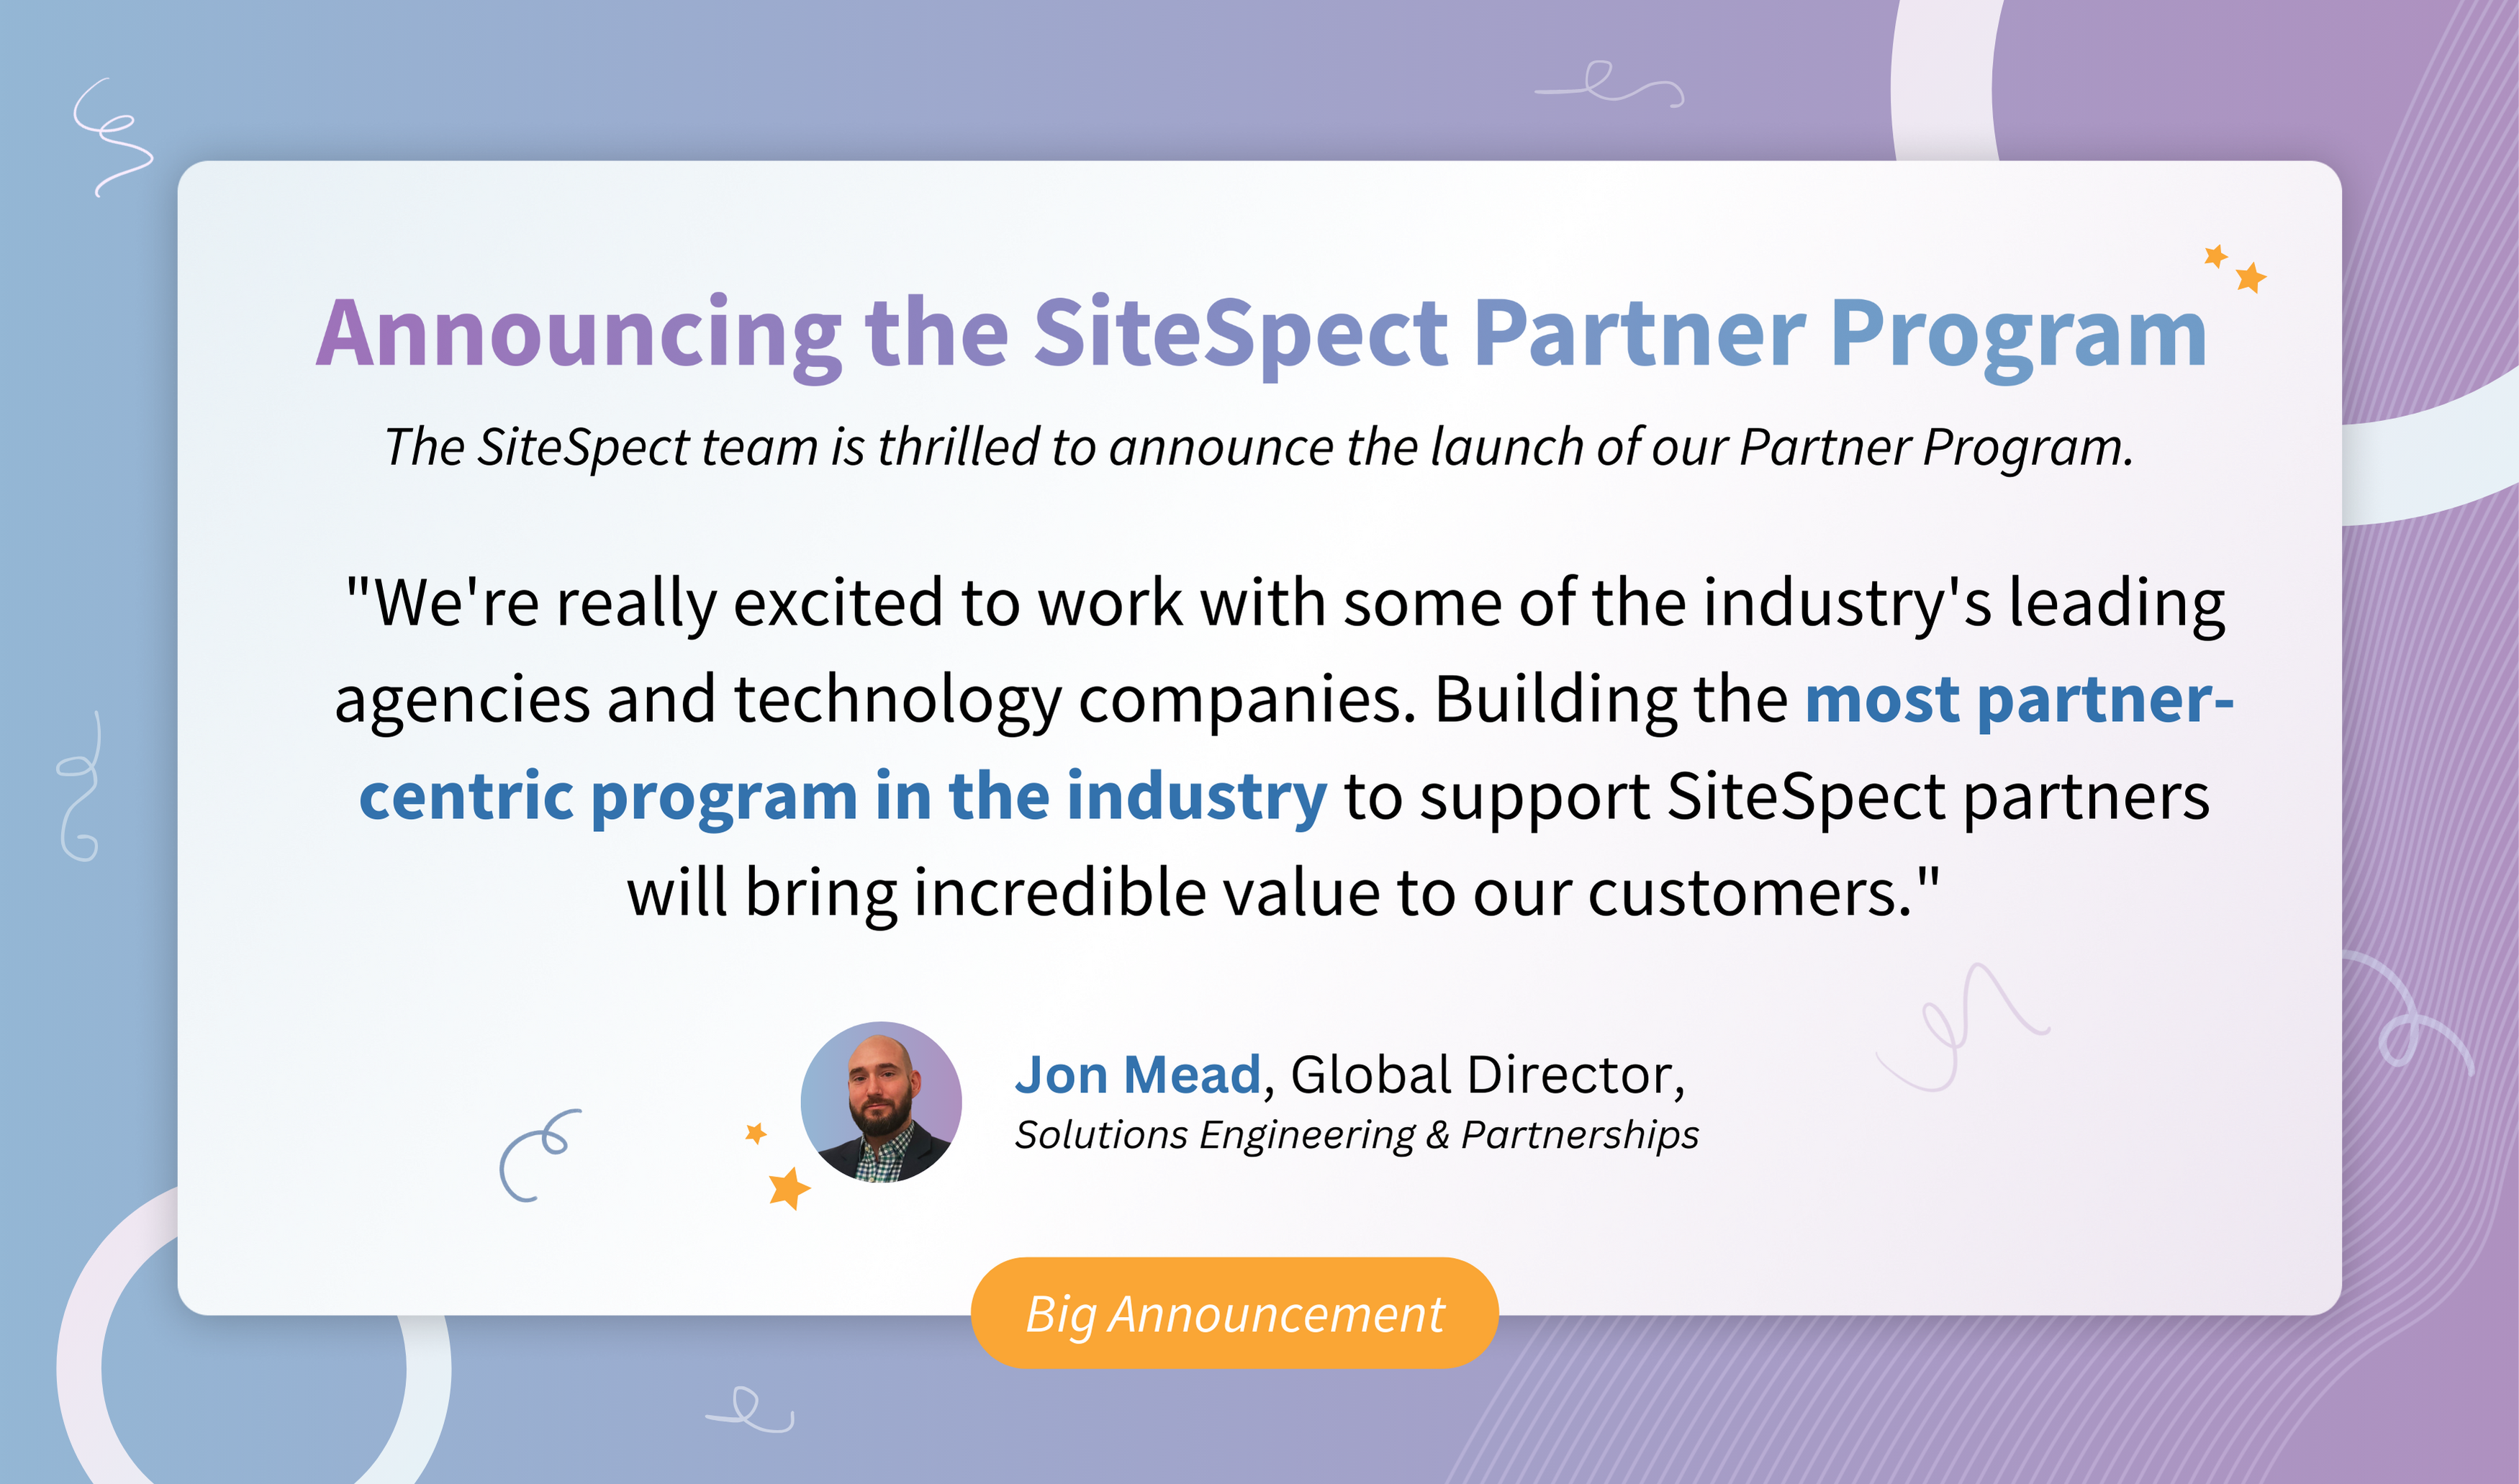 The SiteSpect Partner Program